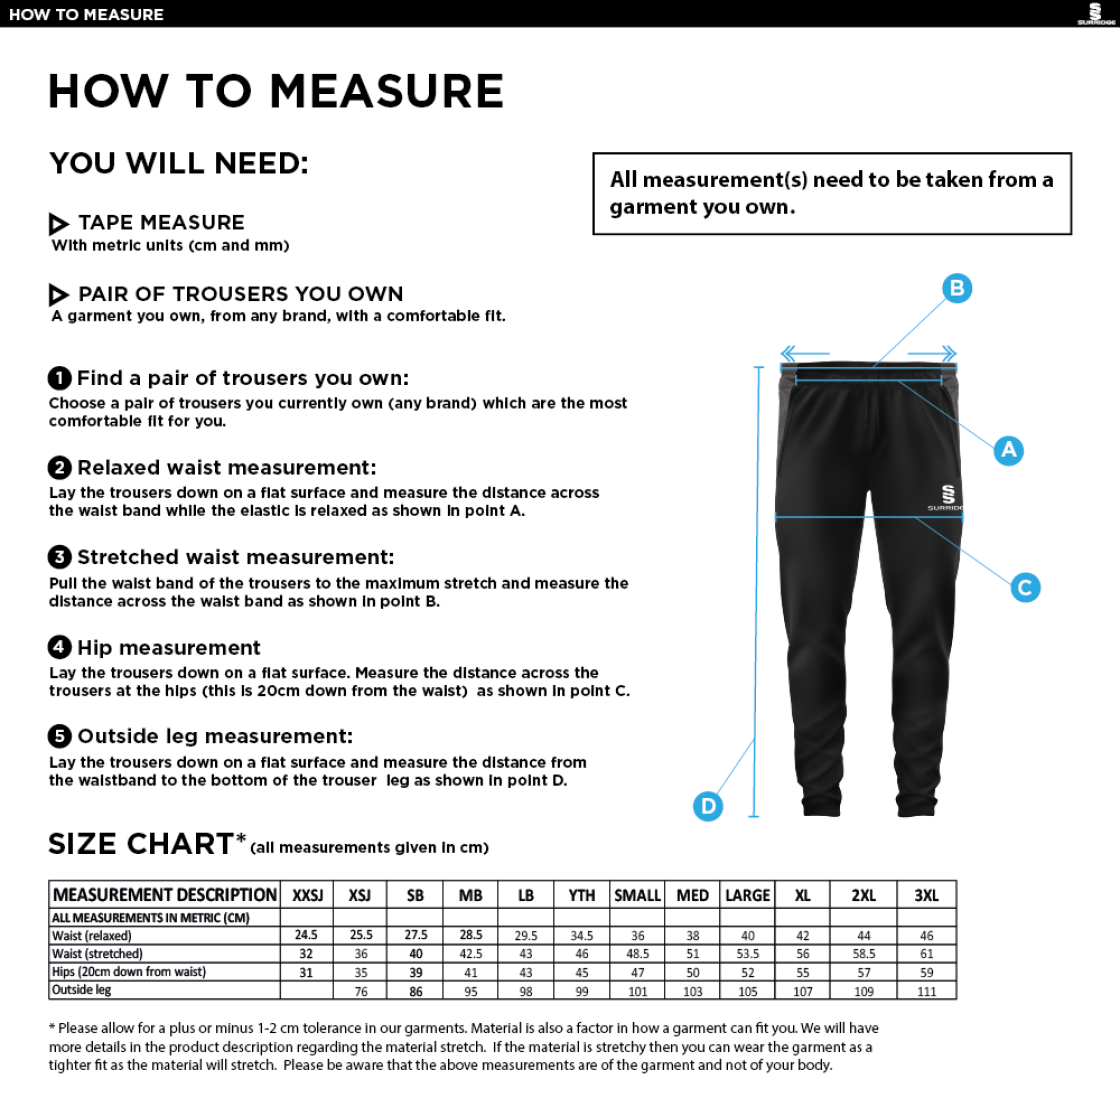 Totteridge Millhillians CC - Tek Skinny Pants - Size Guide